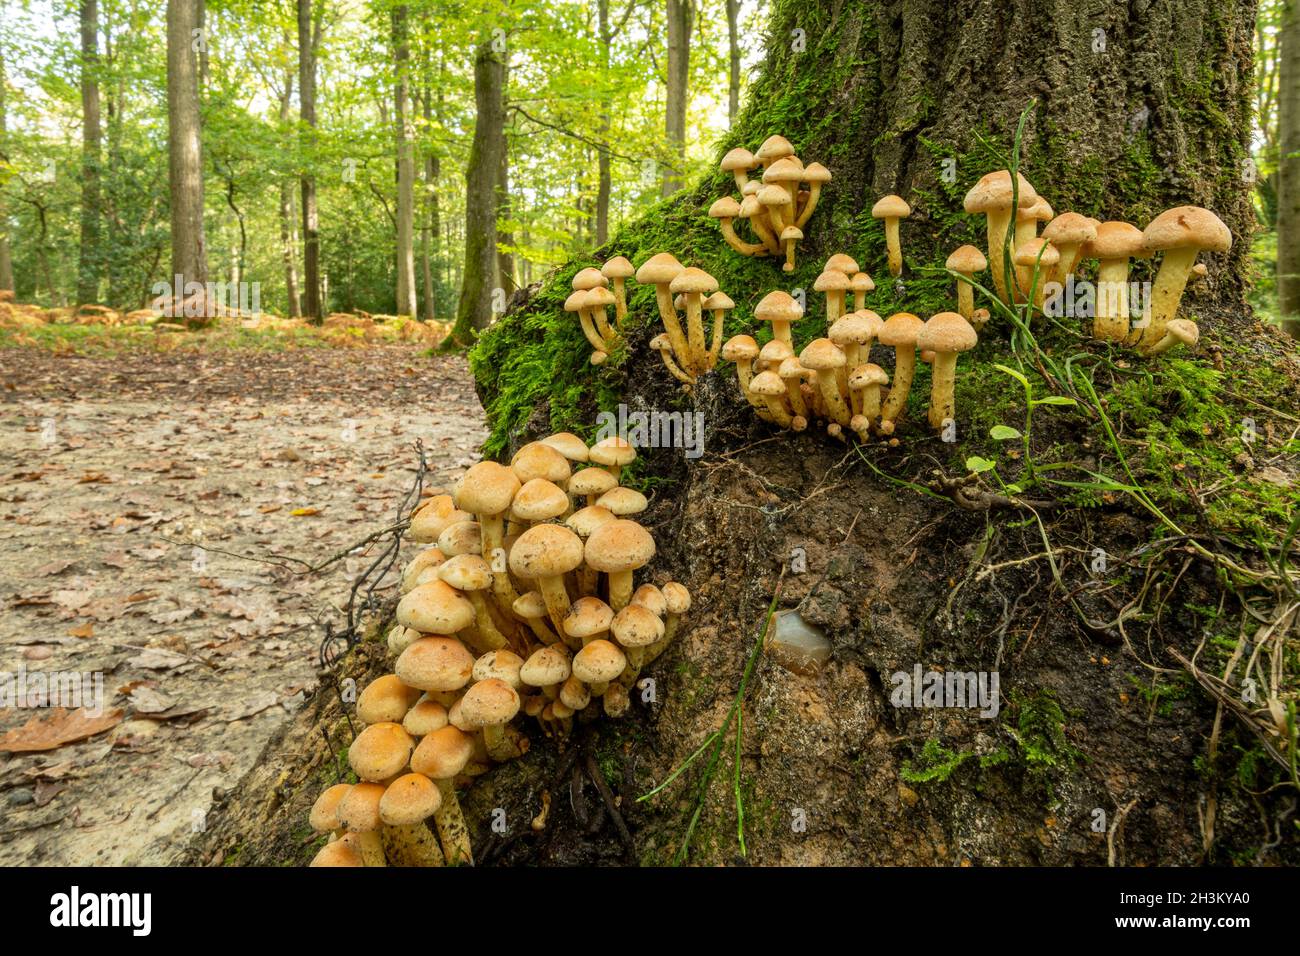 Funghi di tuft di zolfo (Hypholoma fasciculare) o toadsgools che crescono al fondo di un tronco di albero maturo in boschi di latifoglie durante l'autunno, Inghilterra, Regno Unito Foto Stock